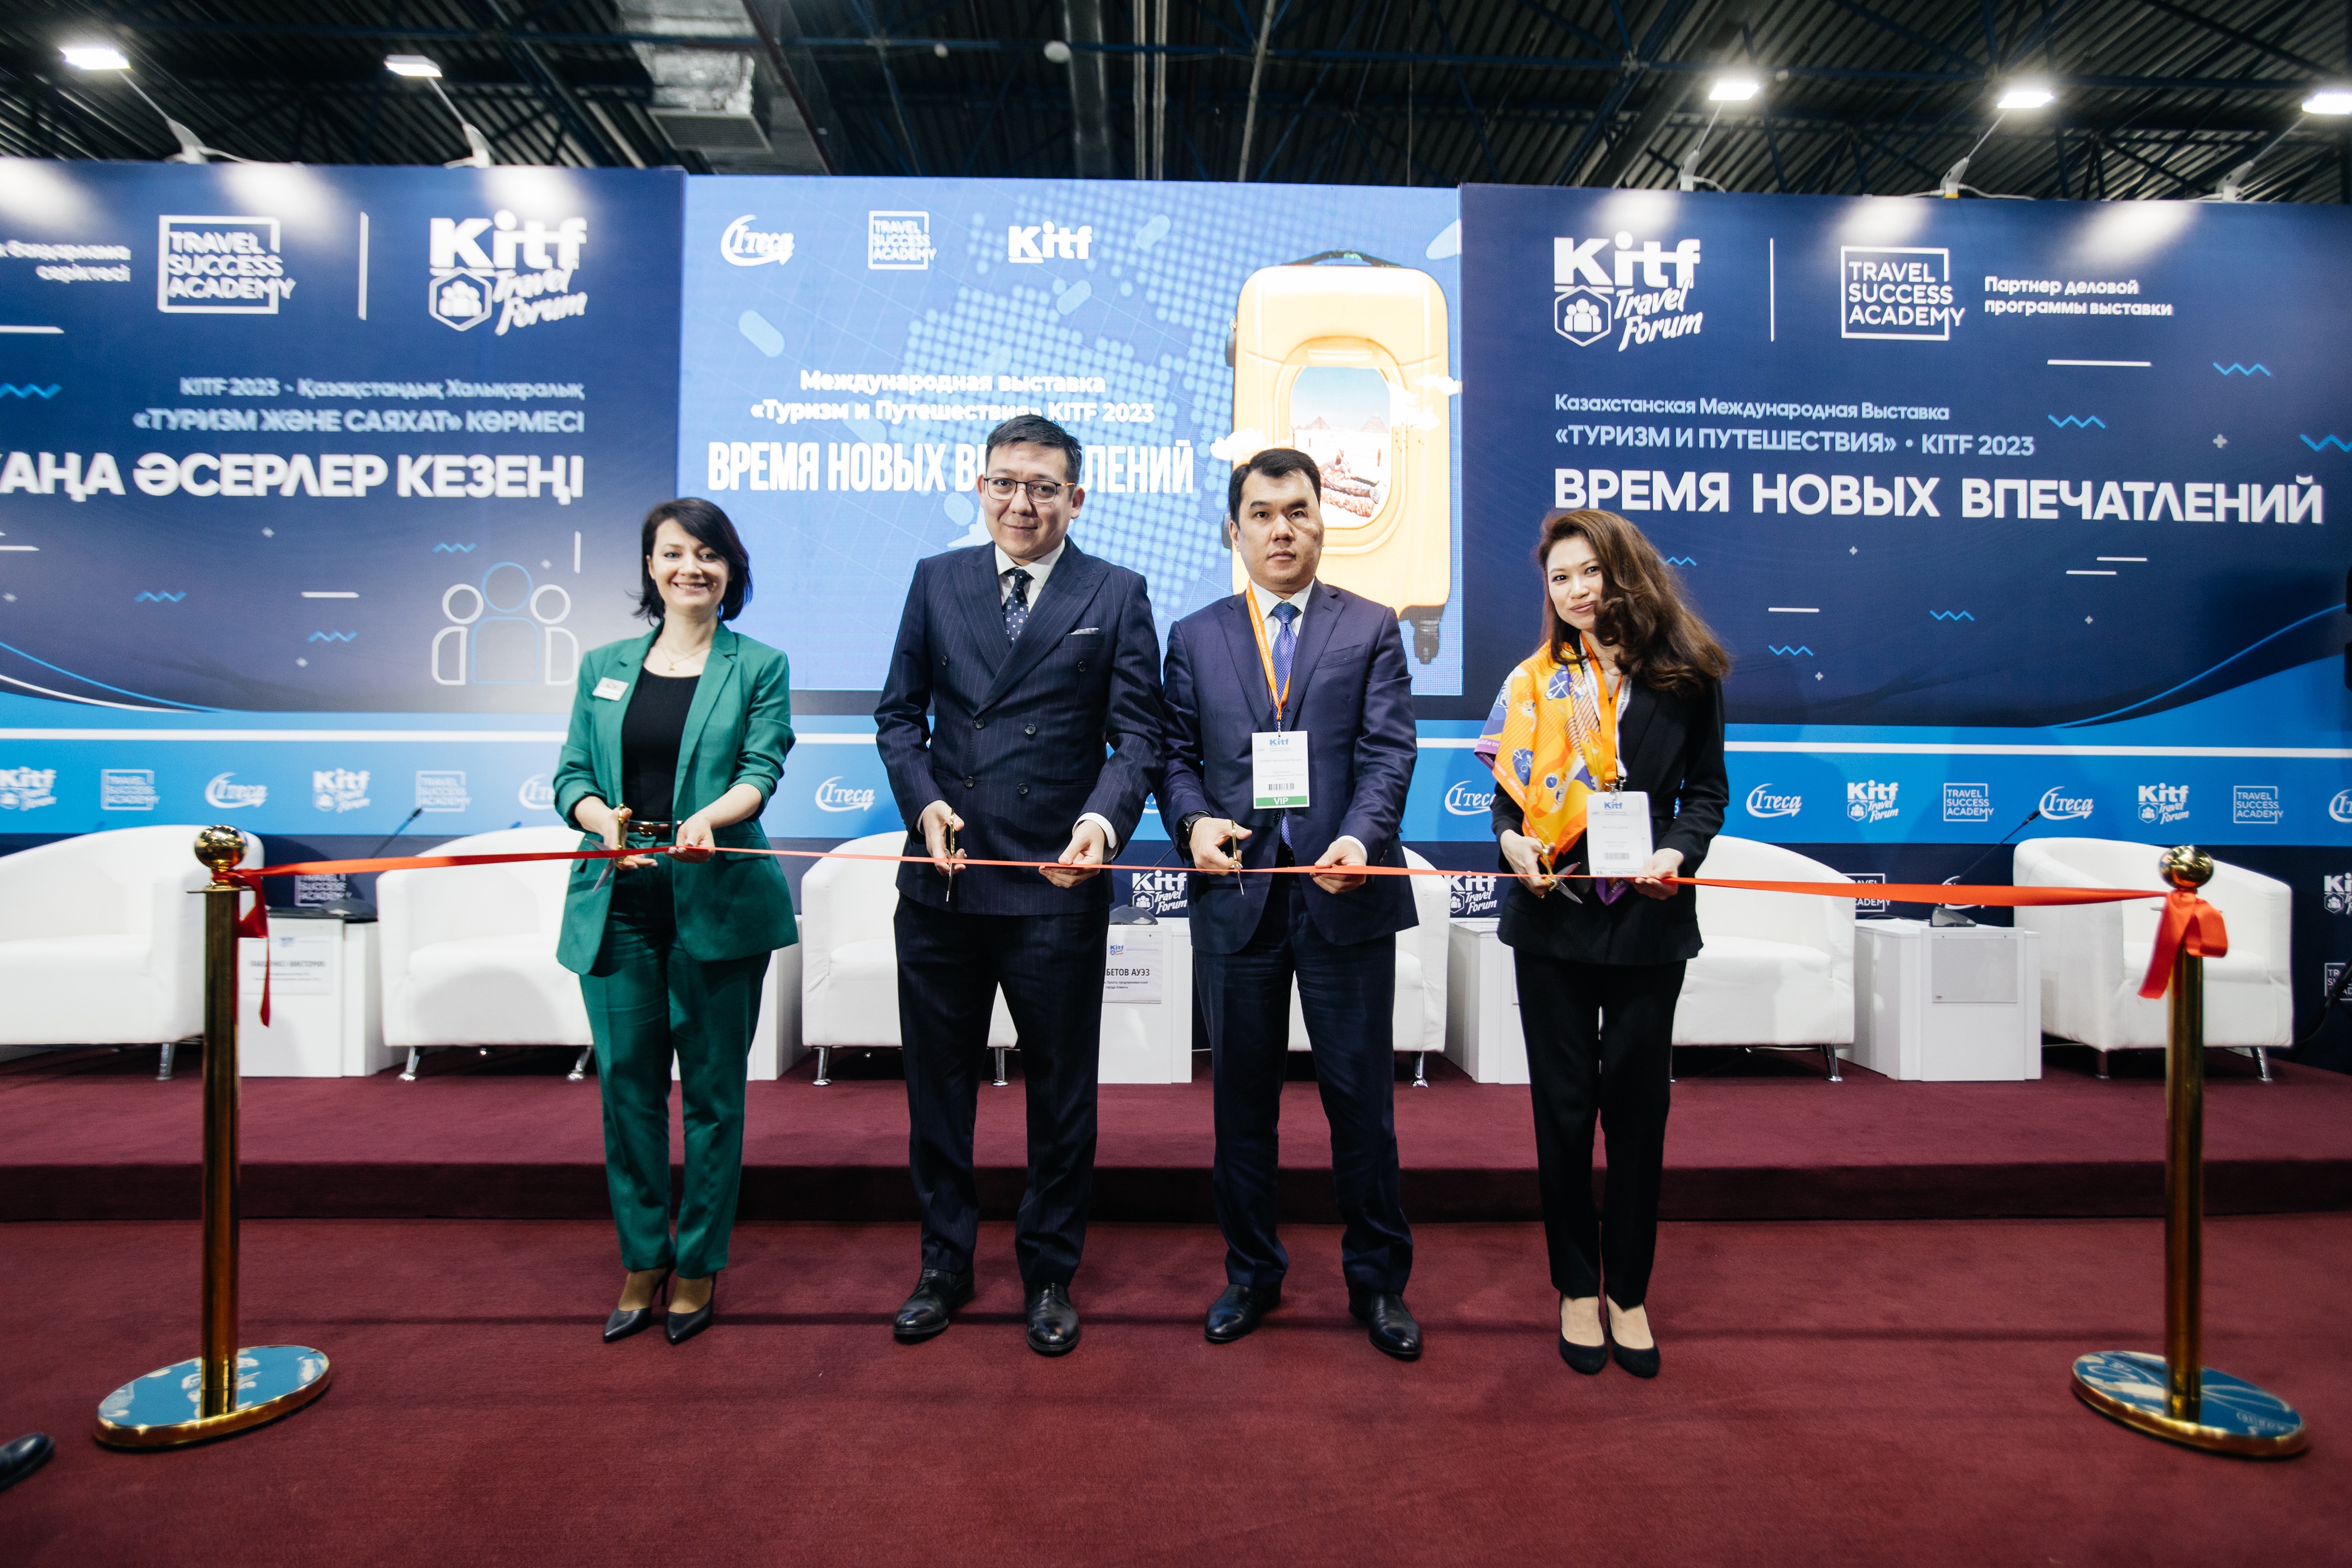 Открываем мир на KITF 2023: в Алматы открылась крупнейшая выставка туризма 